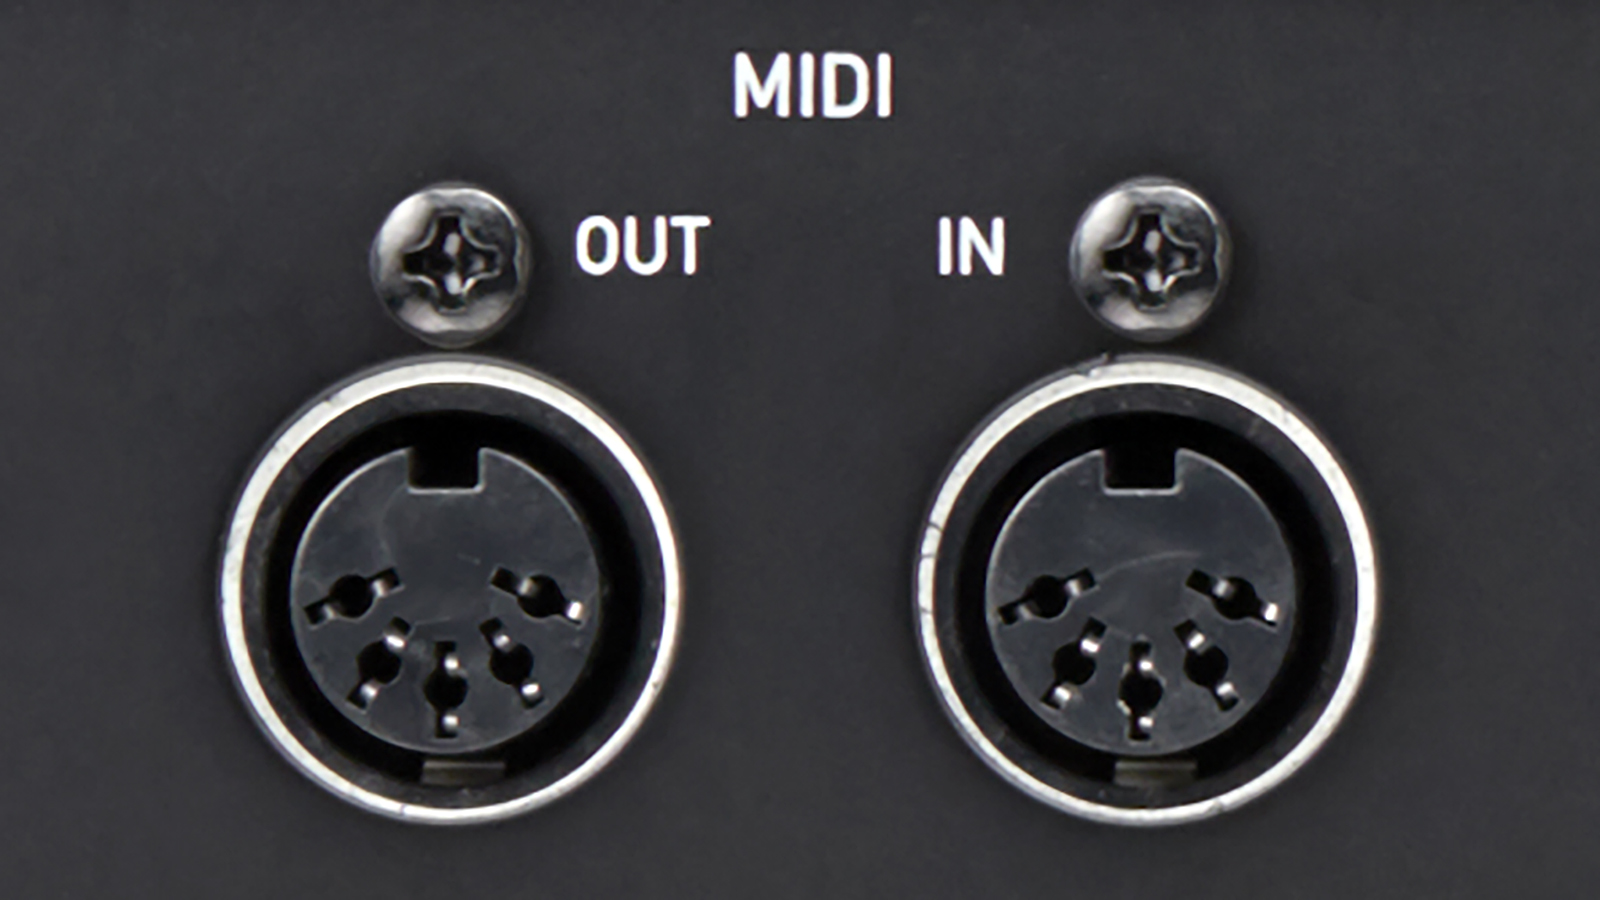 MIDIキーボード等の接続ができるMIDI入出力端子